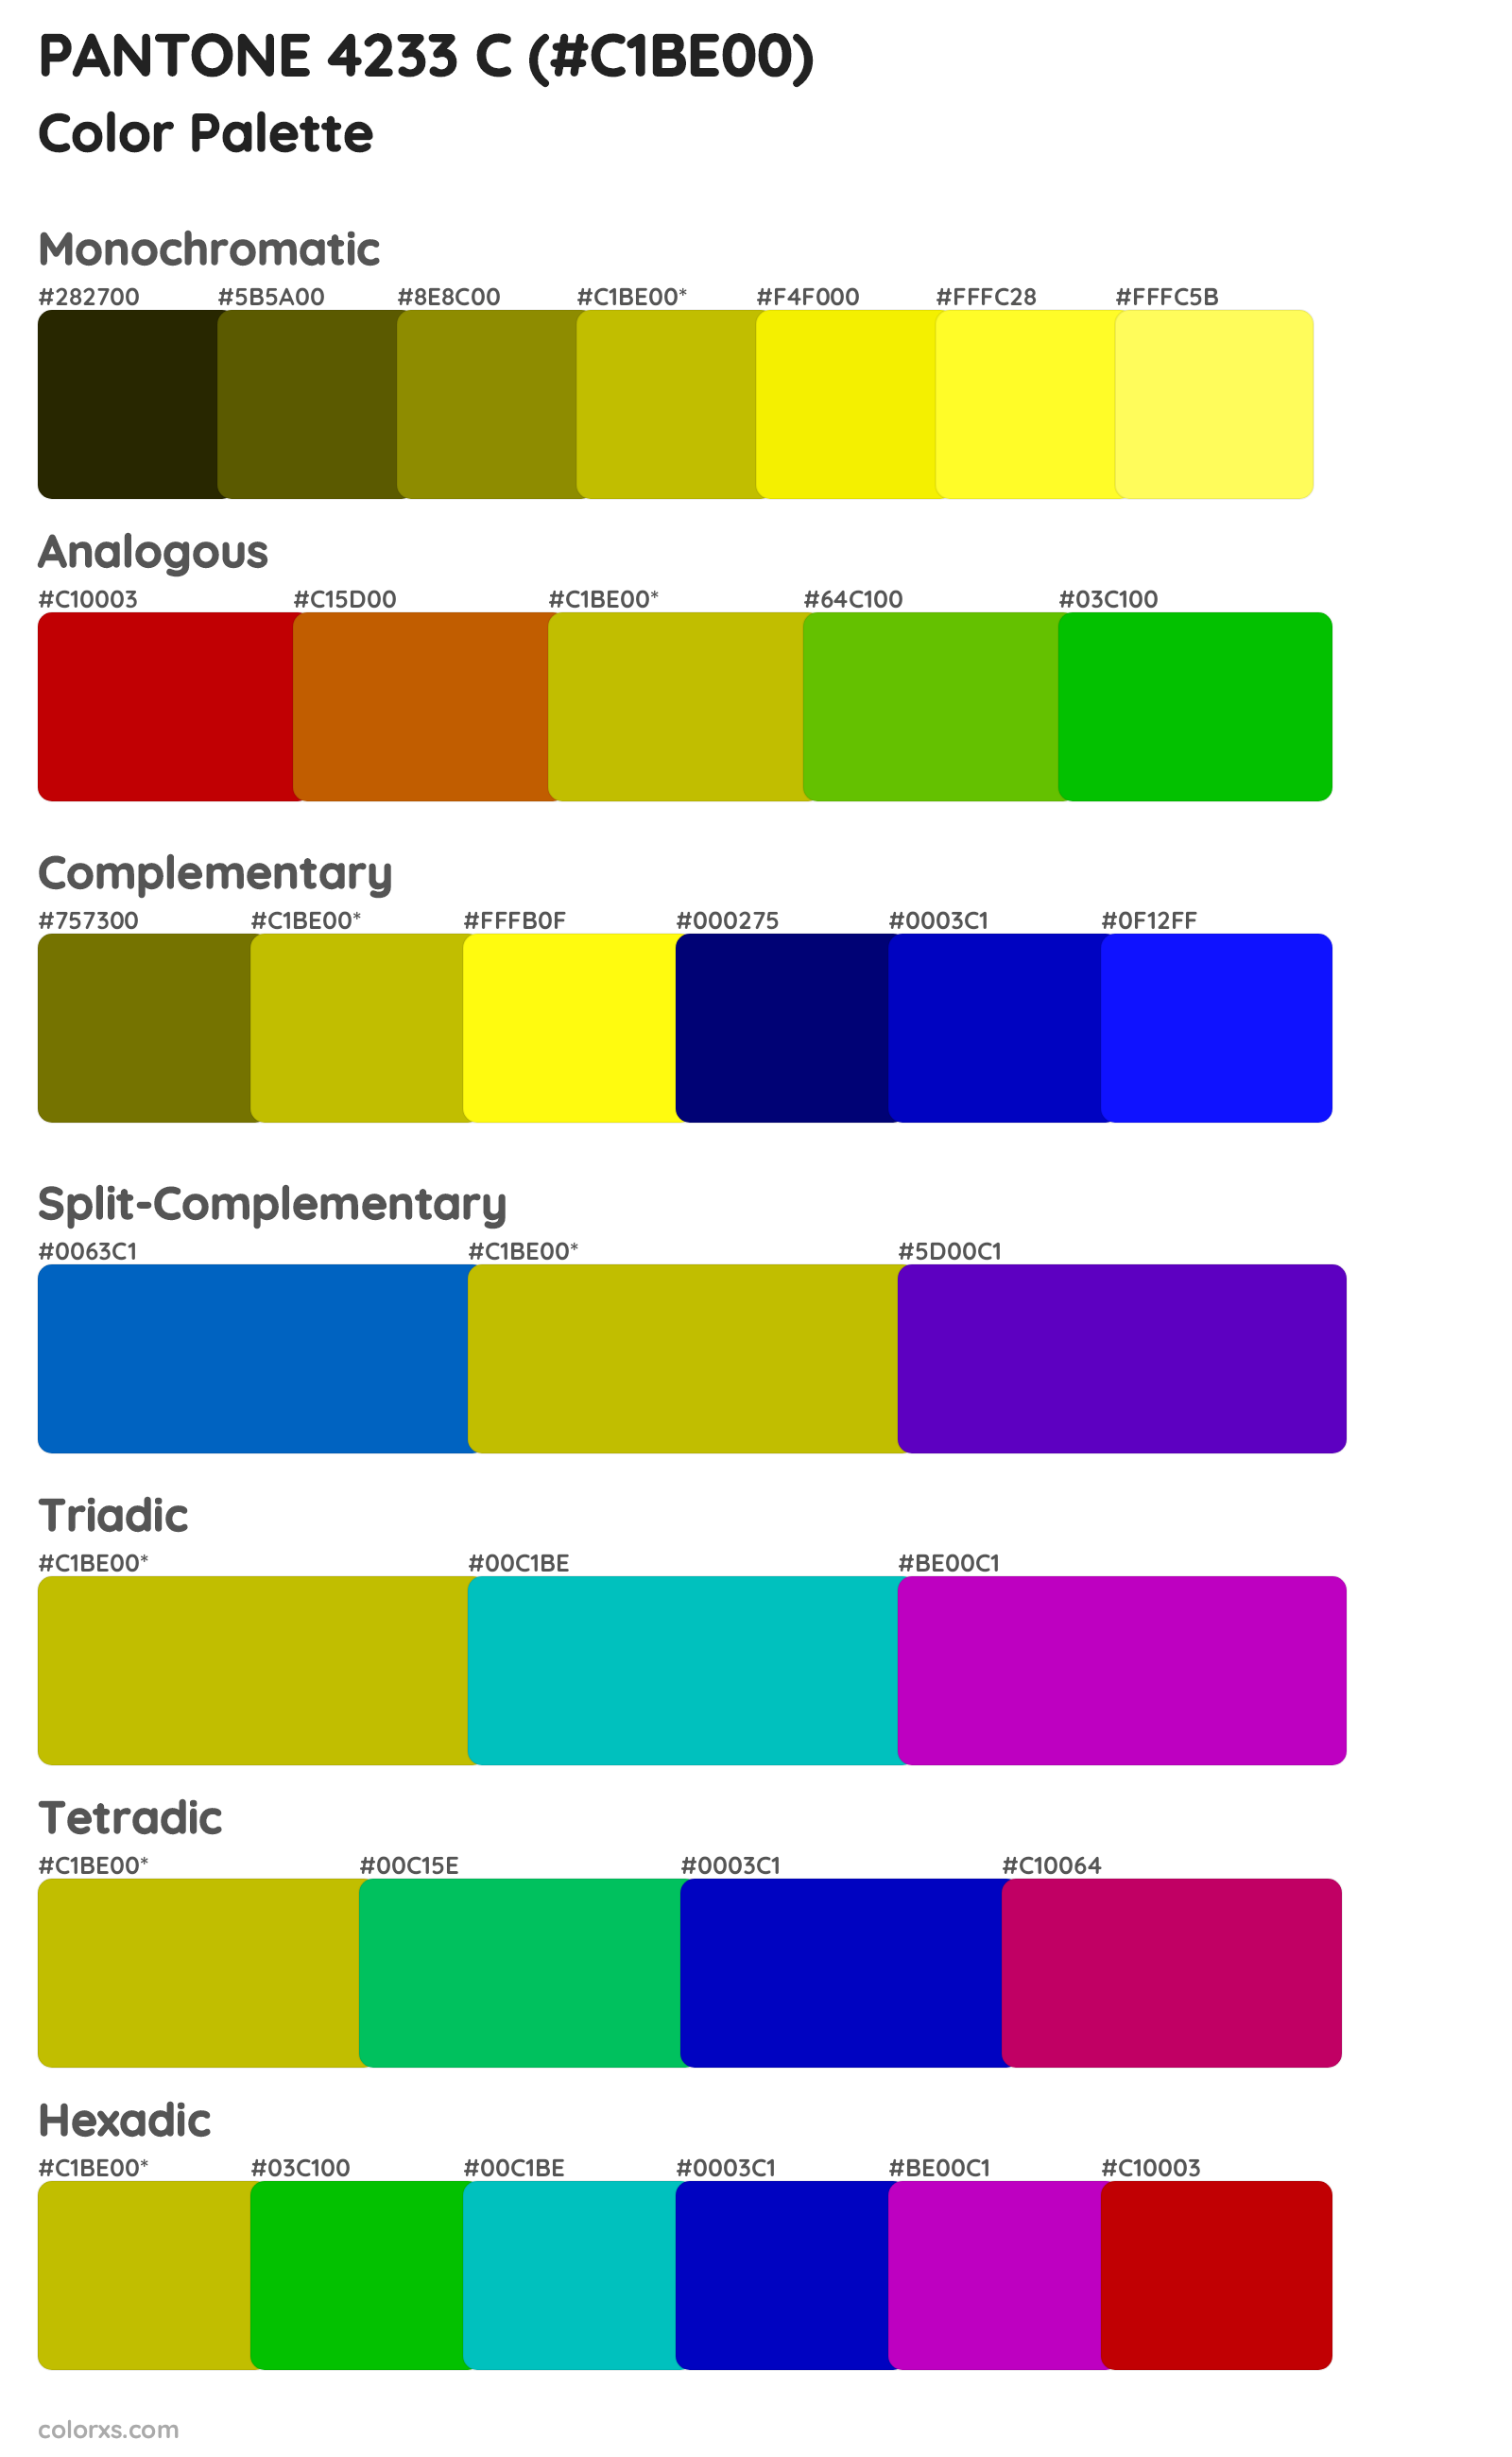 PANTONE 4233 C Color Scheme Palettes